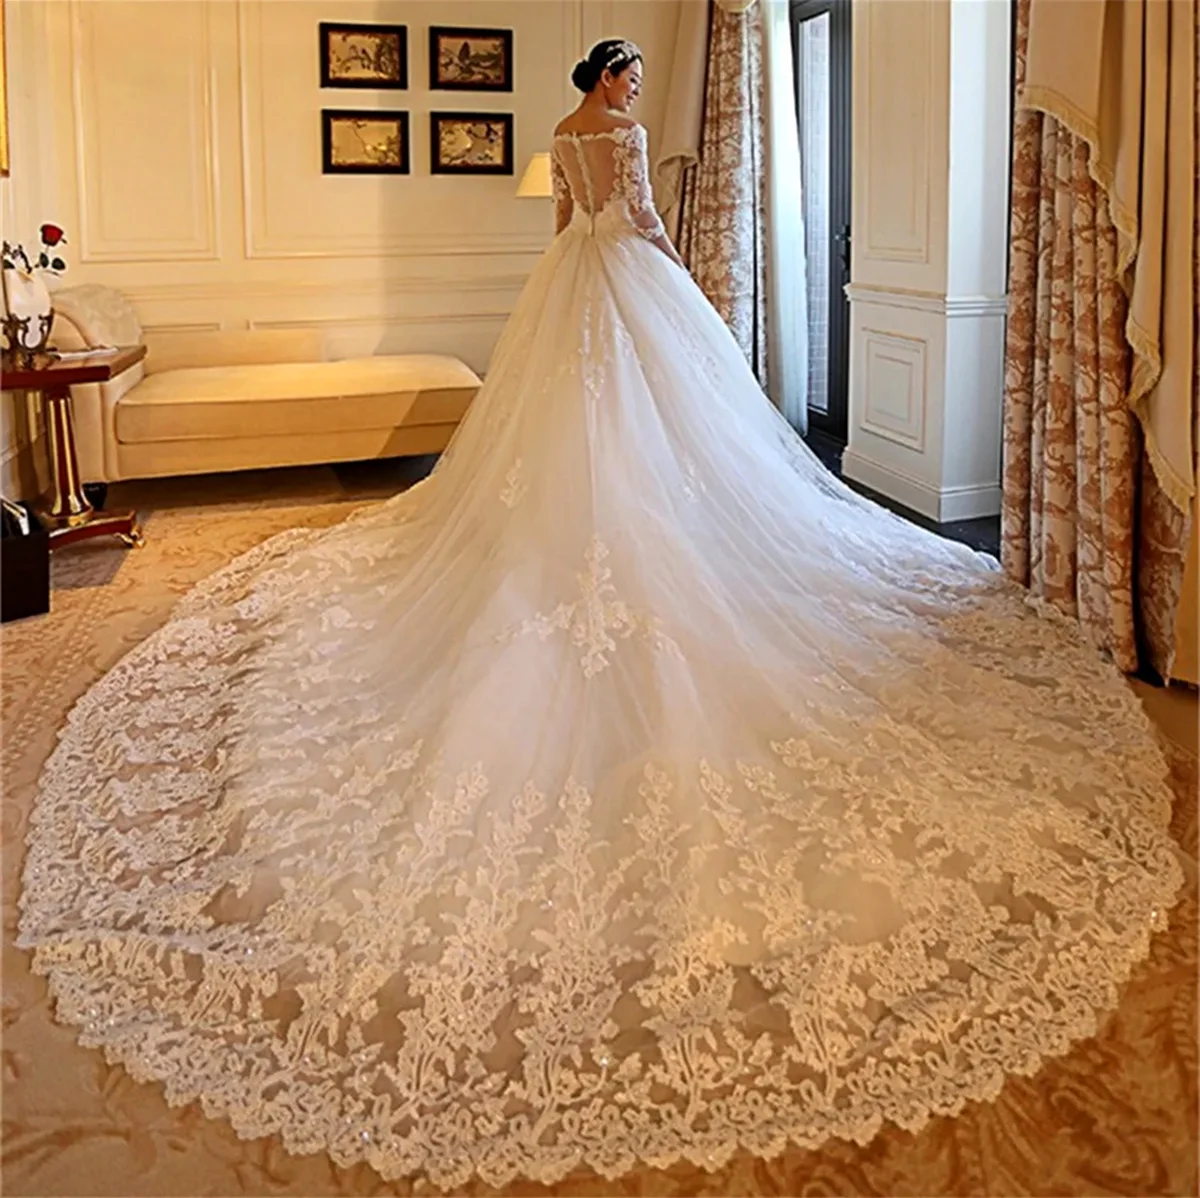 Vestido de noiva бальное платье 2018. Красивая картинка